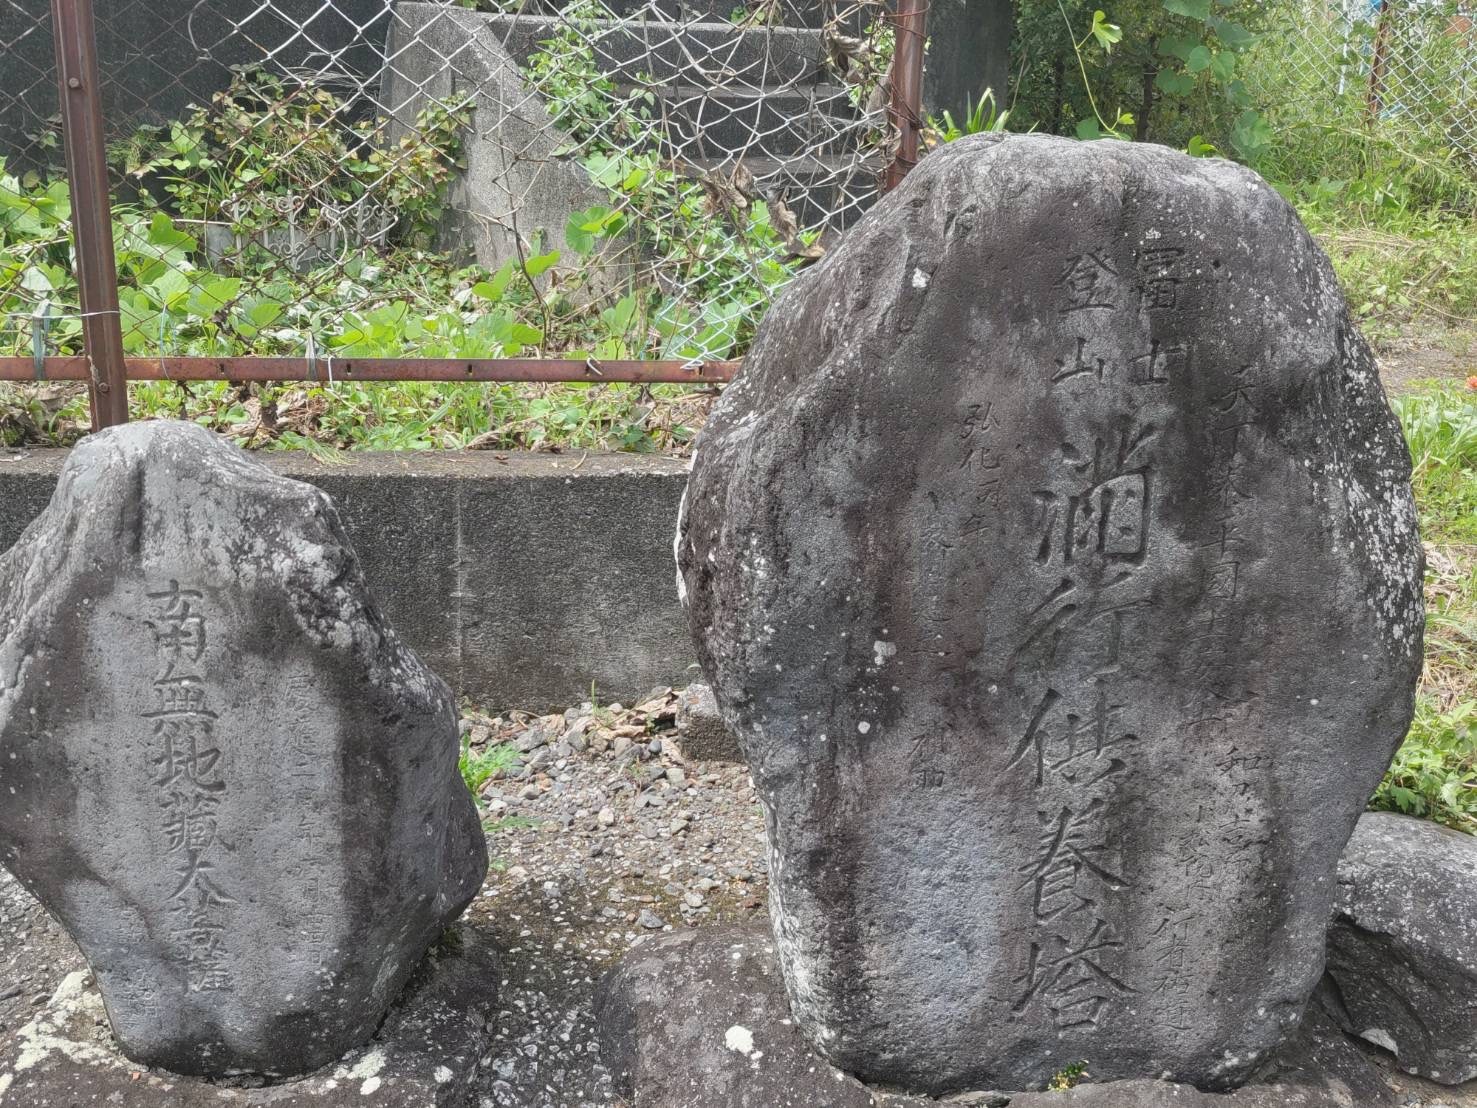 右側の石碑には『富士登山』の文字が彫られています。